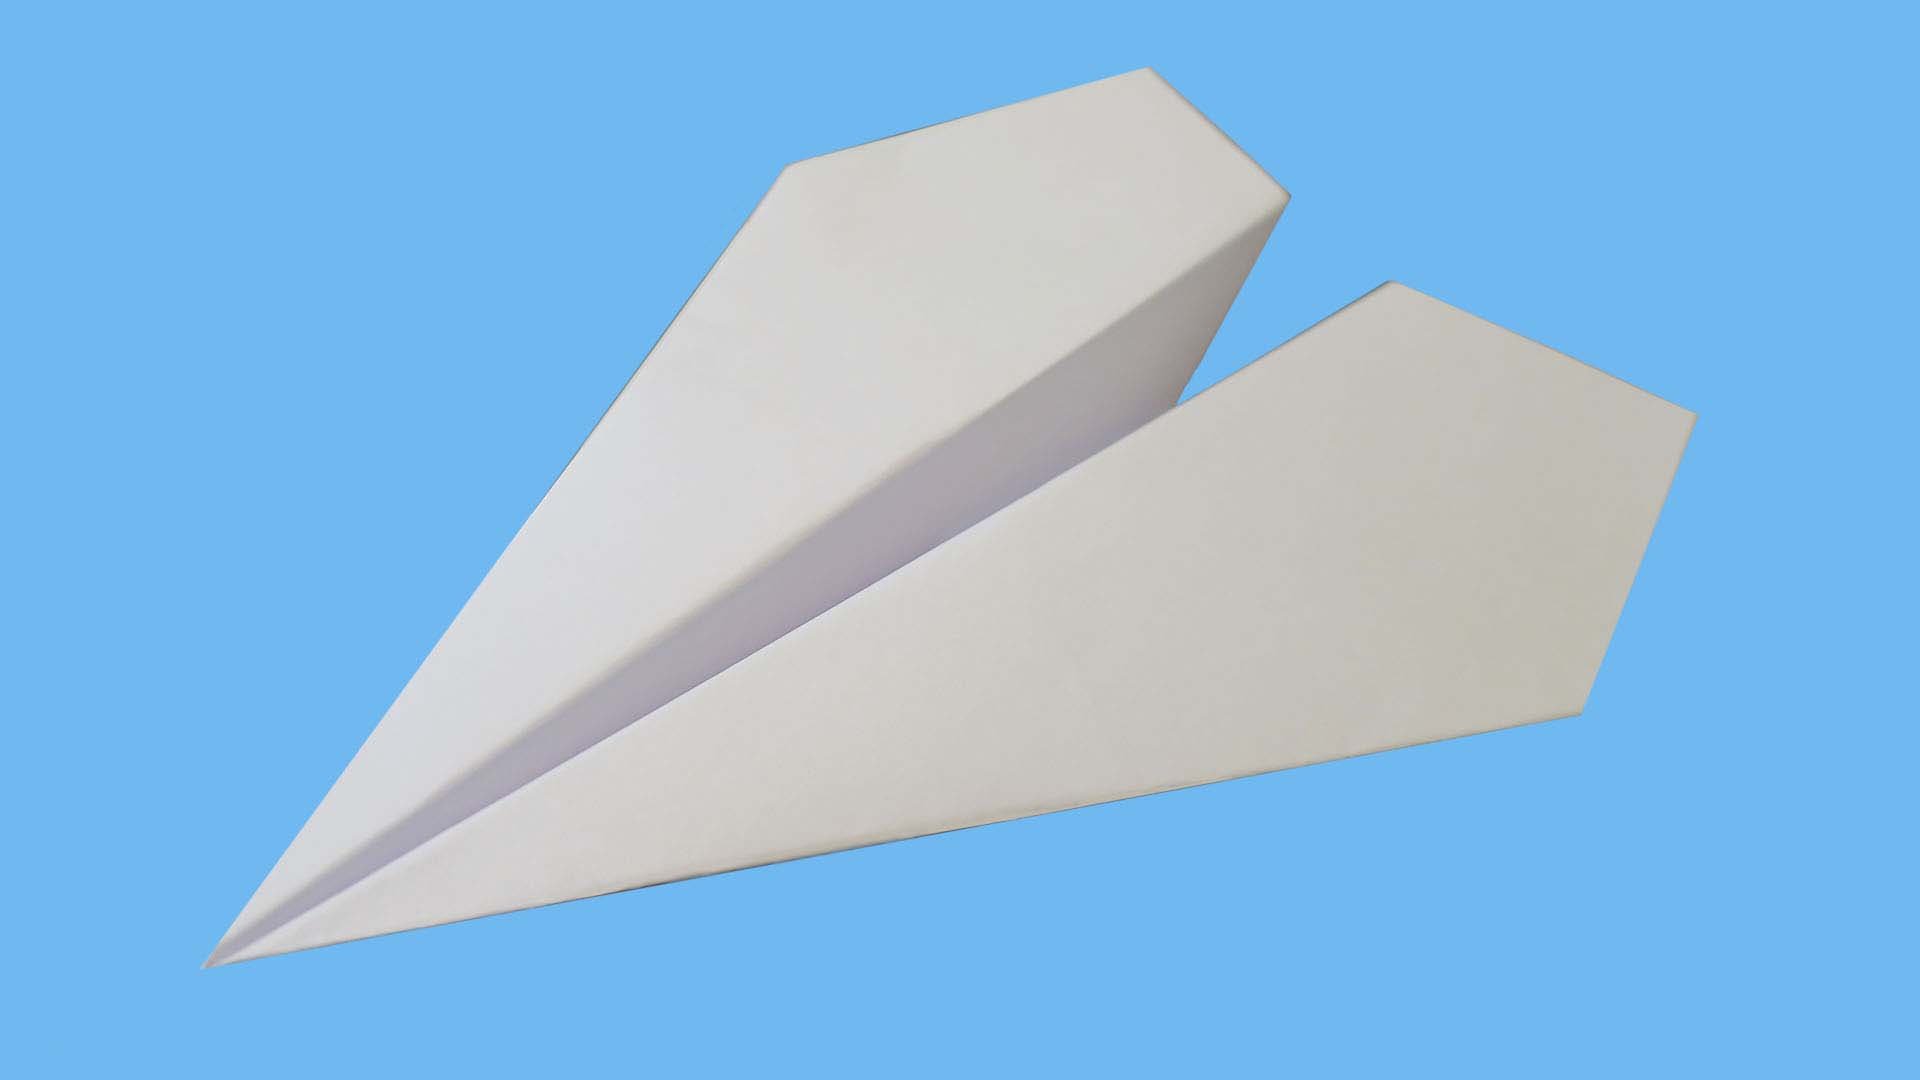 Как сделать самолет из бумаги. Легкий способ как сделать самолет